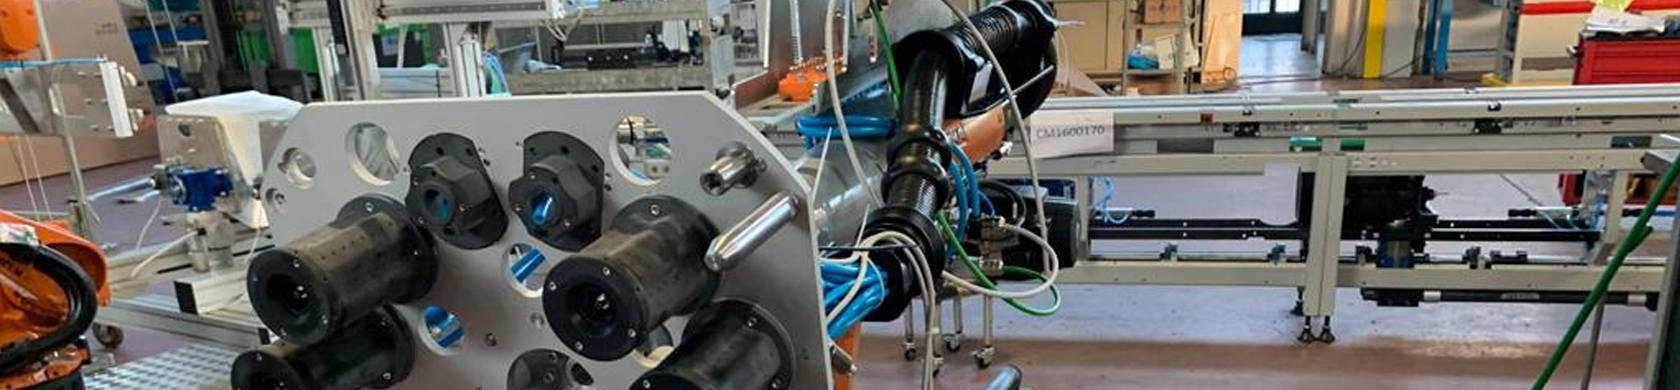 Robot ed automazioni su misura per lavorazione e stampaggio materie plastiche.